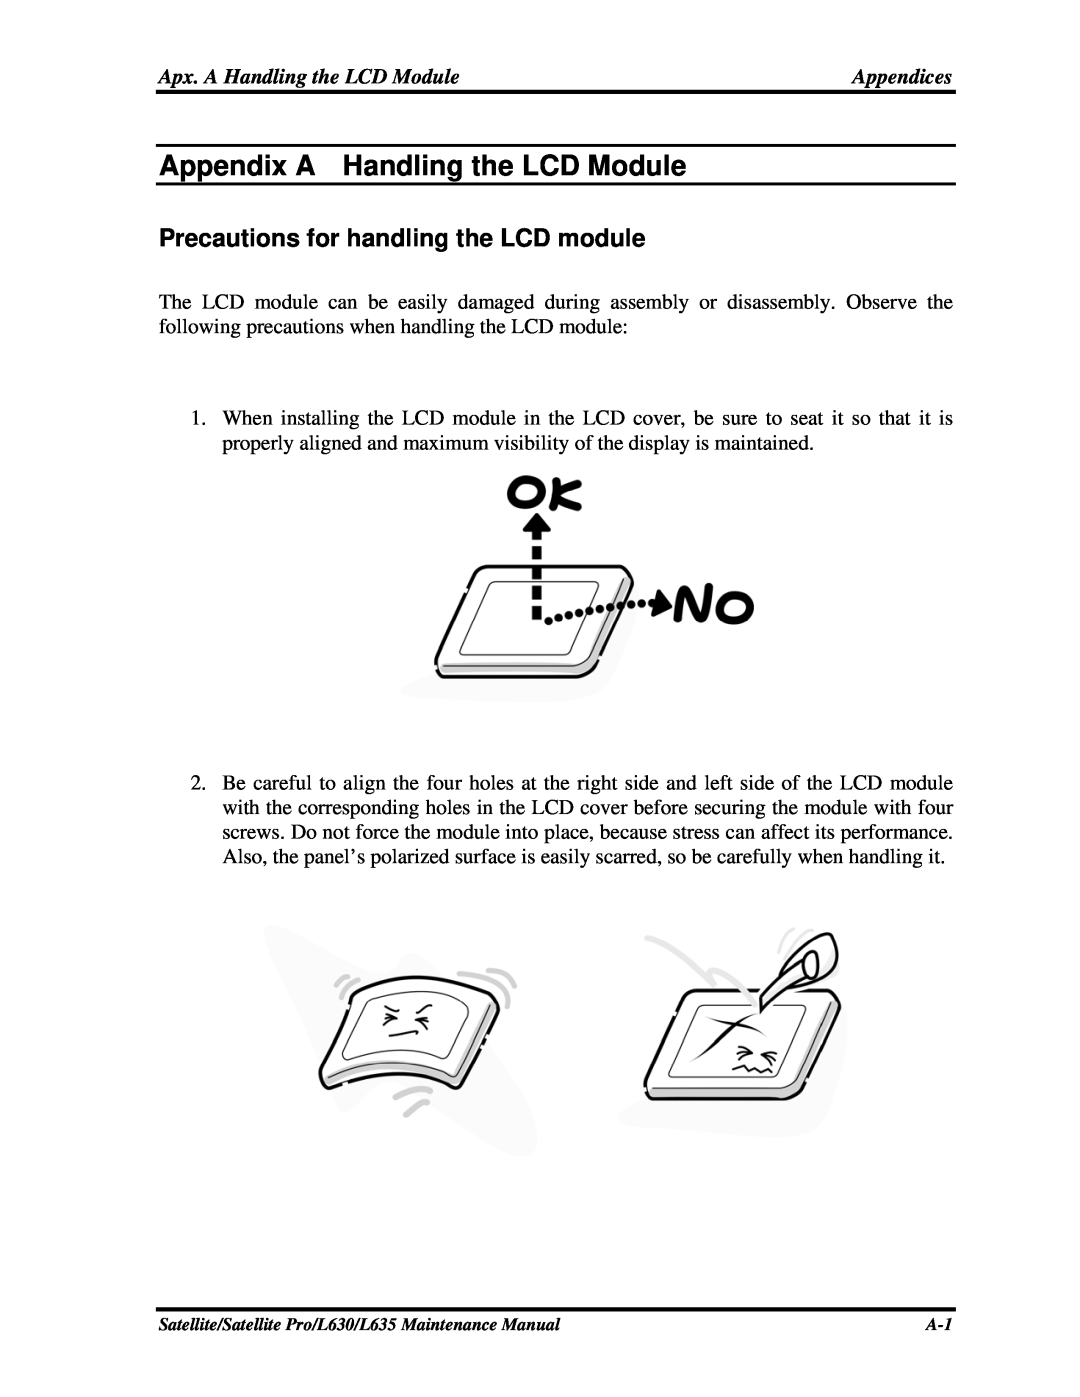 Toshiba L630, L635 manual Appendix A Handling the LCD Module, Precautions for handling the LCD module 